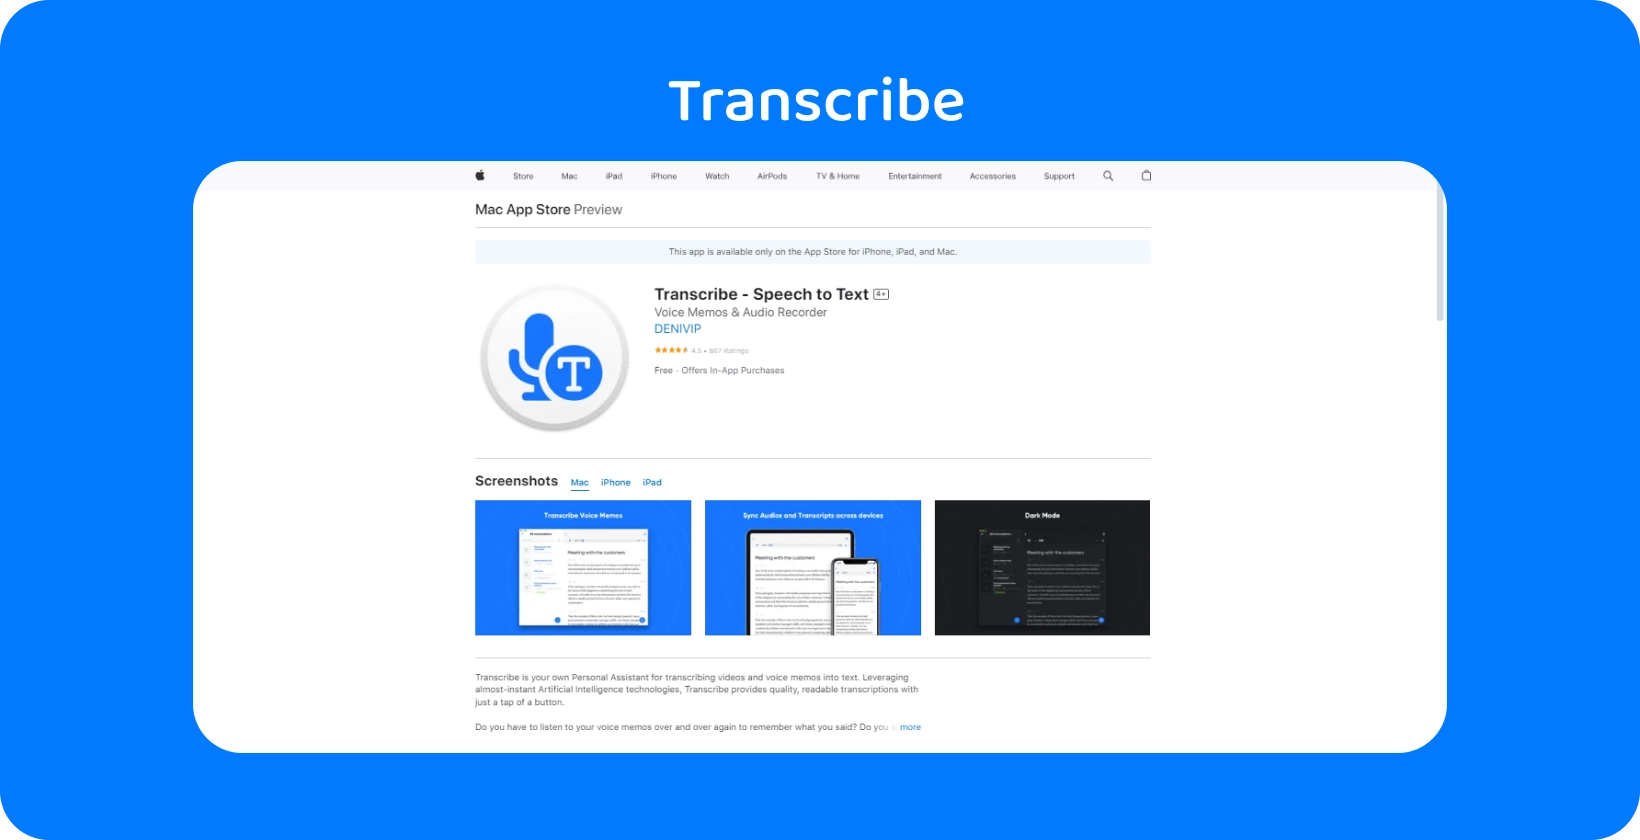 Captura de pantalla de la aplicación Transcribe en el Mac App Store, destacando sus capacidades de voz a texto.